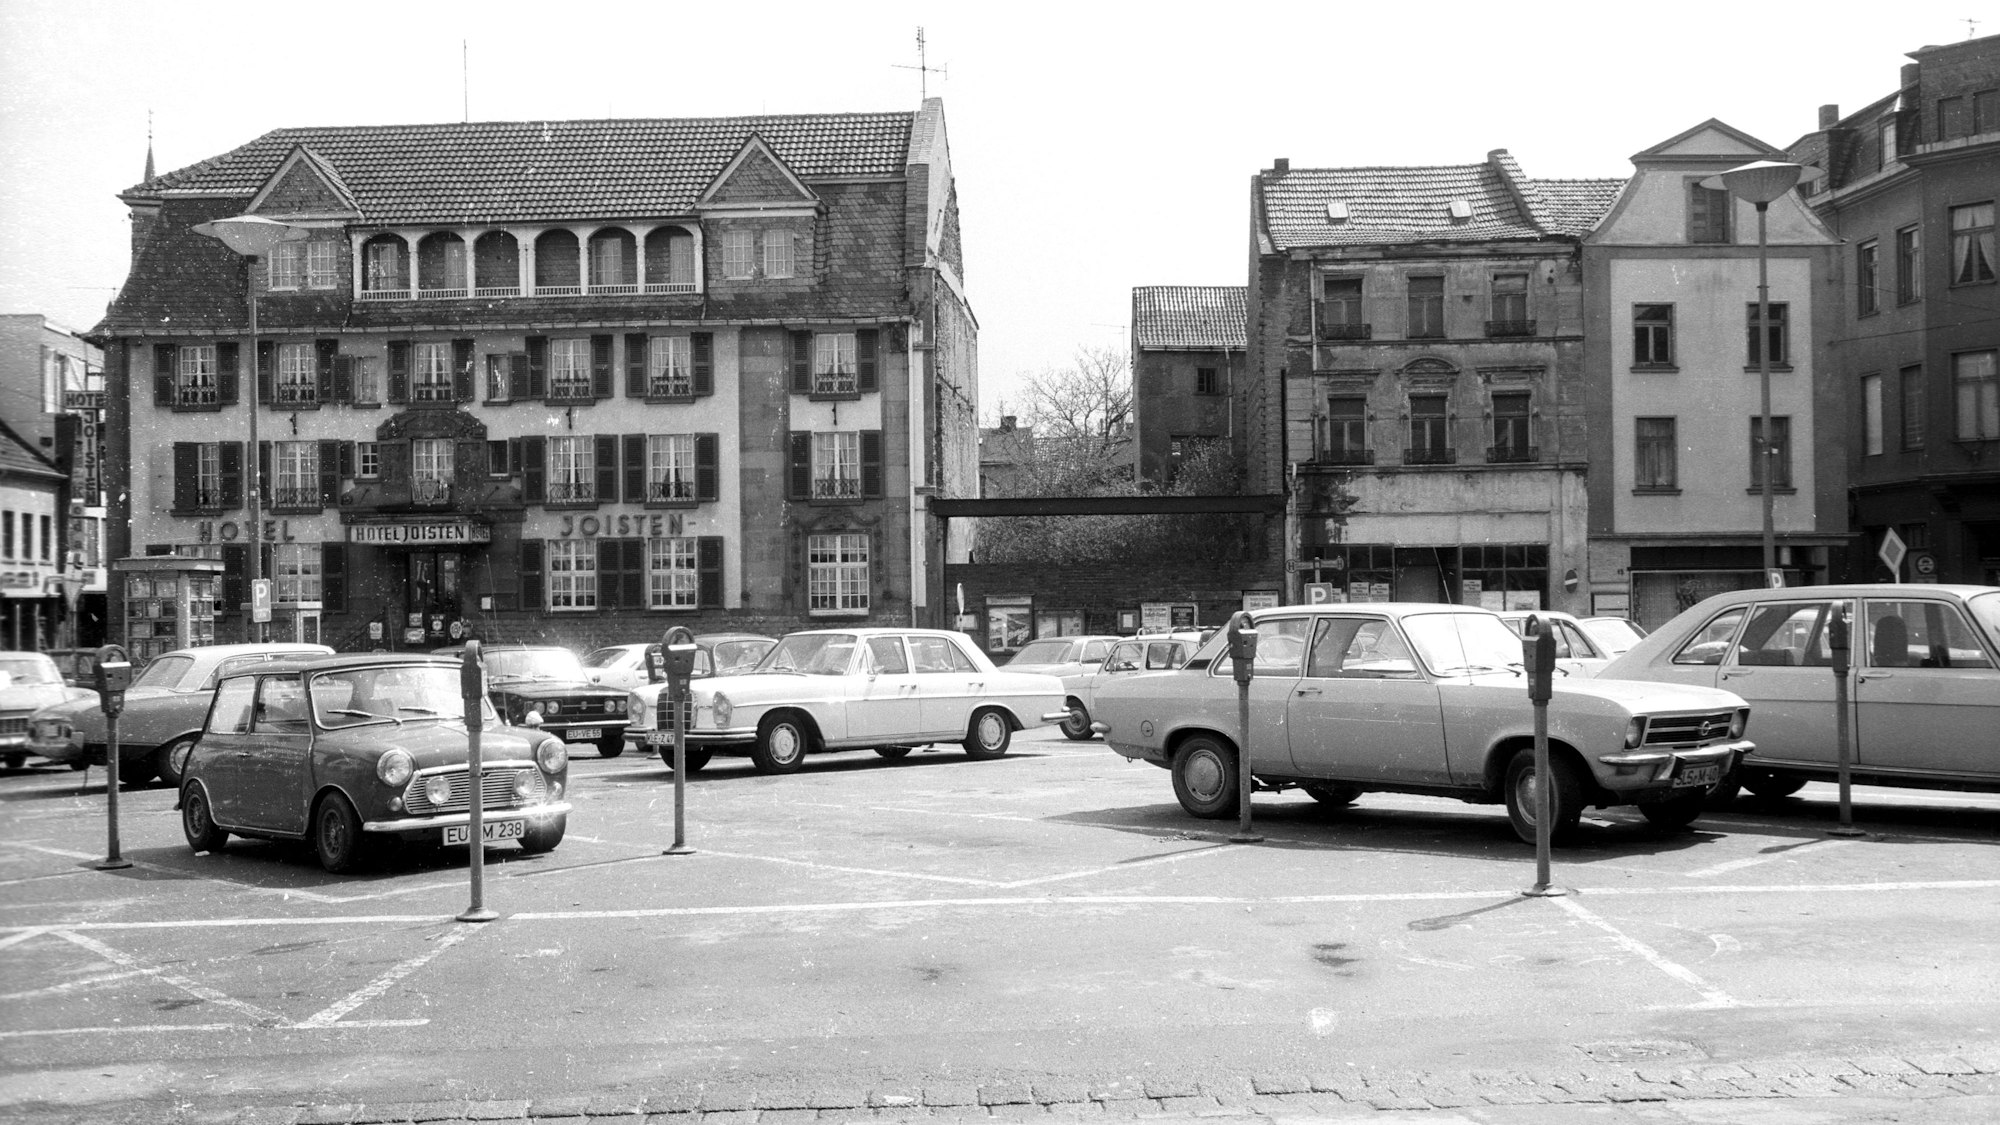 Das Schwarz-Weiß-Bild zeigt das Hotel Joisten in Euskirchen. Viele Euskirchener trauern dem Hotel noch nach.